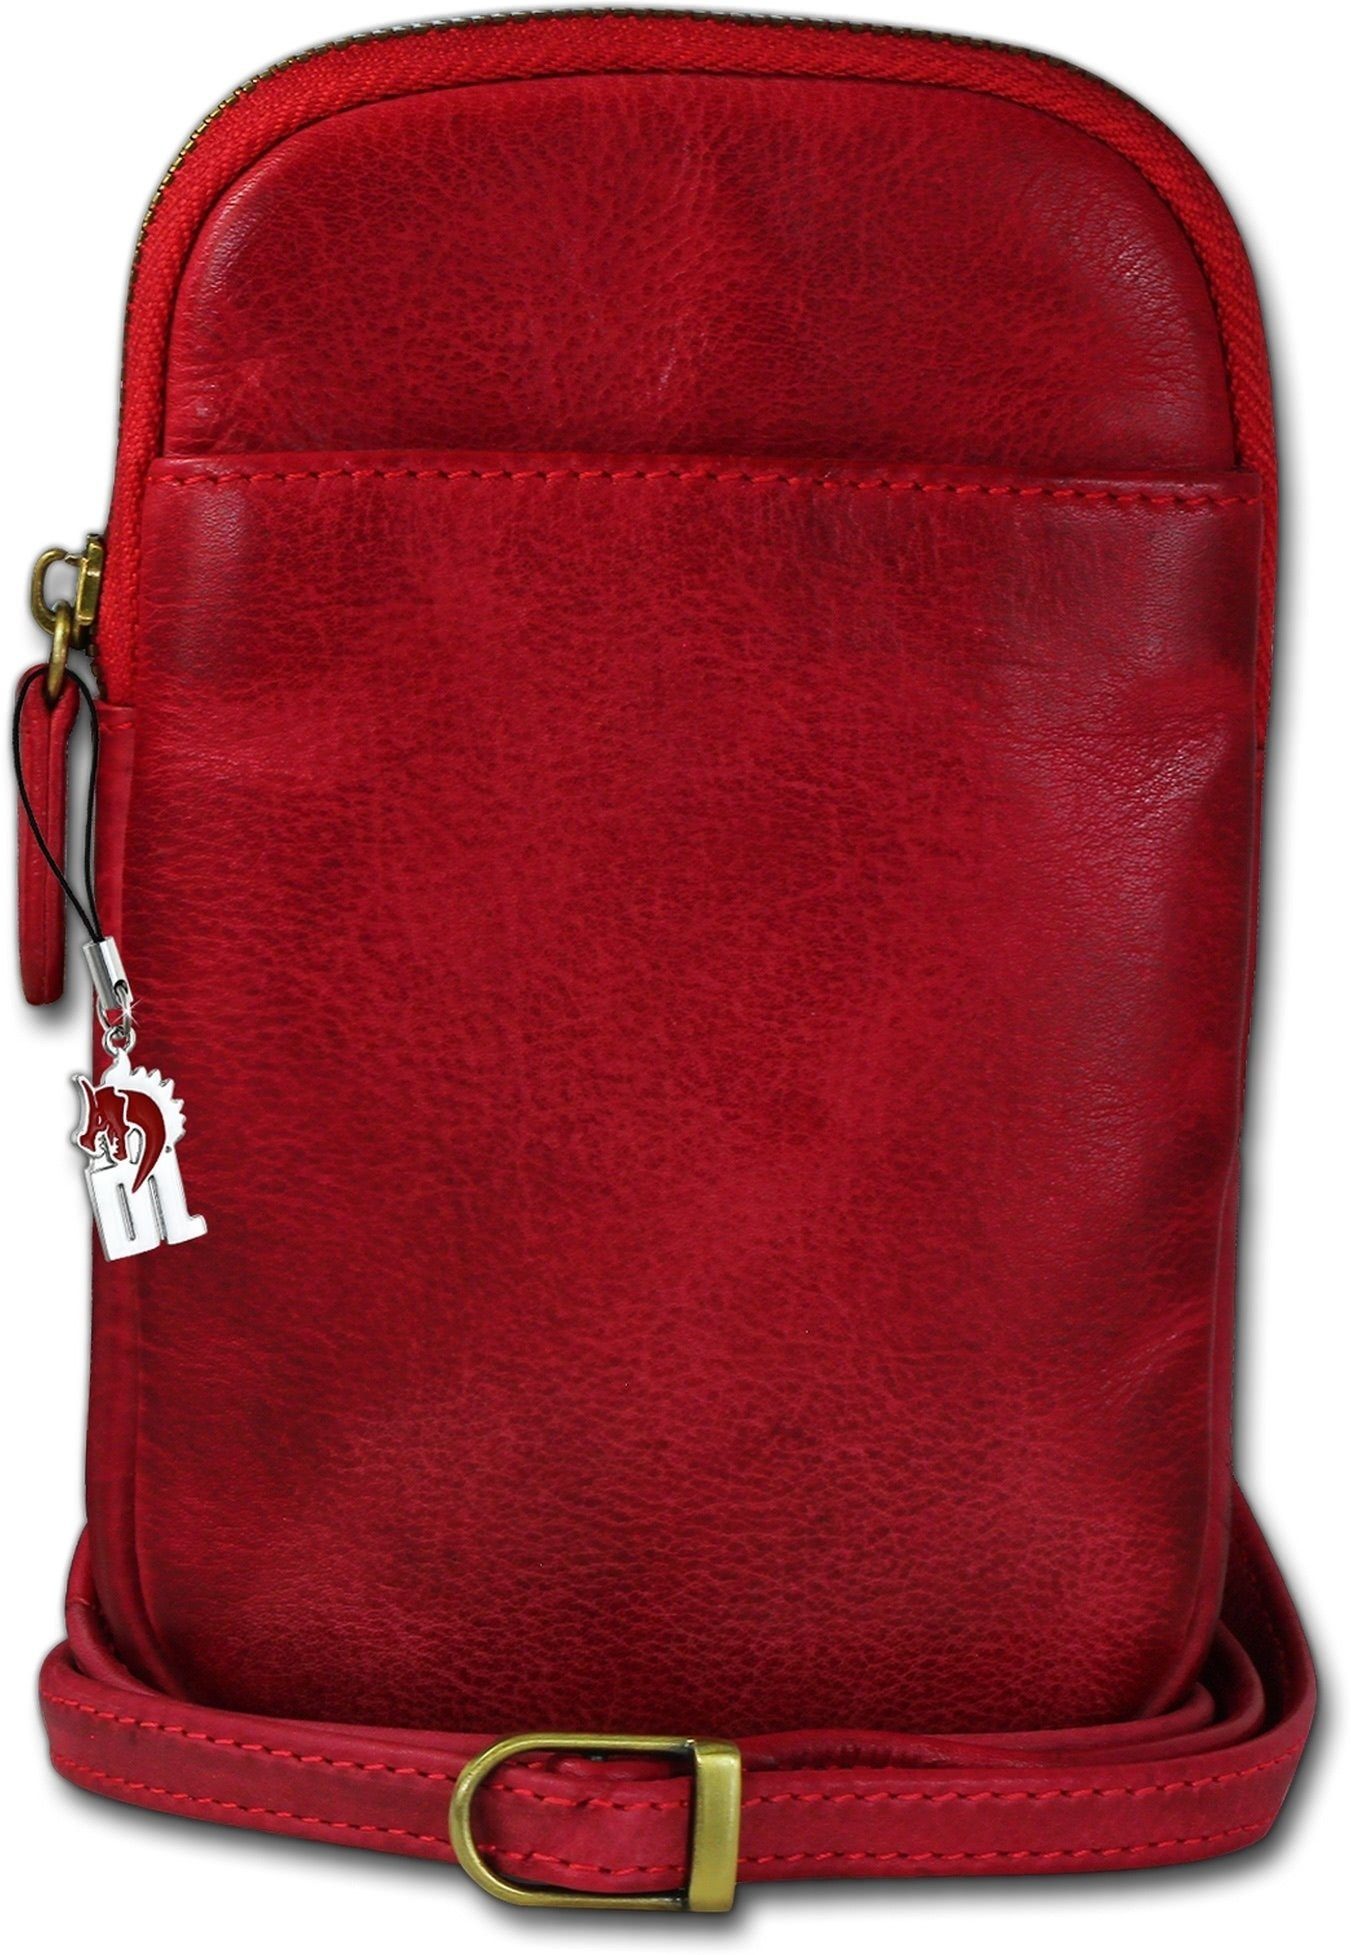 Umhängetasche), ca. DrachenLeder Umhängetasche Handtasche Echtleder Tasche 13cm Umhängetasche Handtasche, Größe rot, DrachenLeder unisex Damen (Umhängetasche,